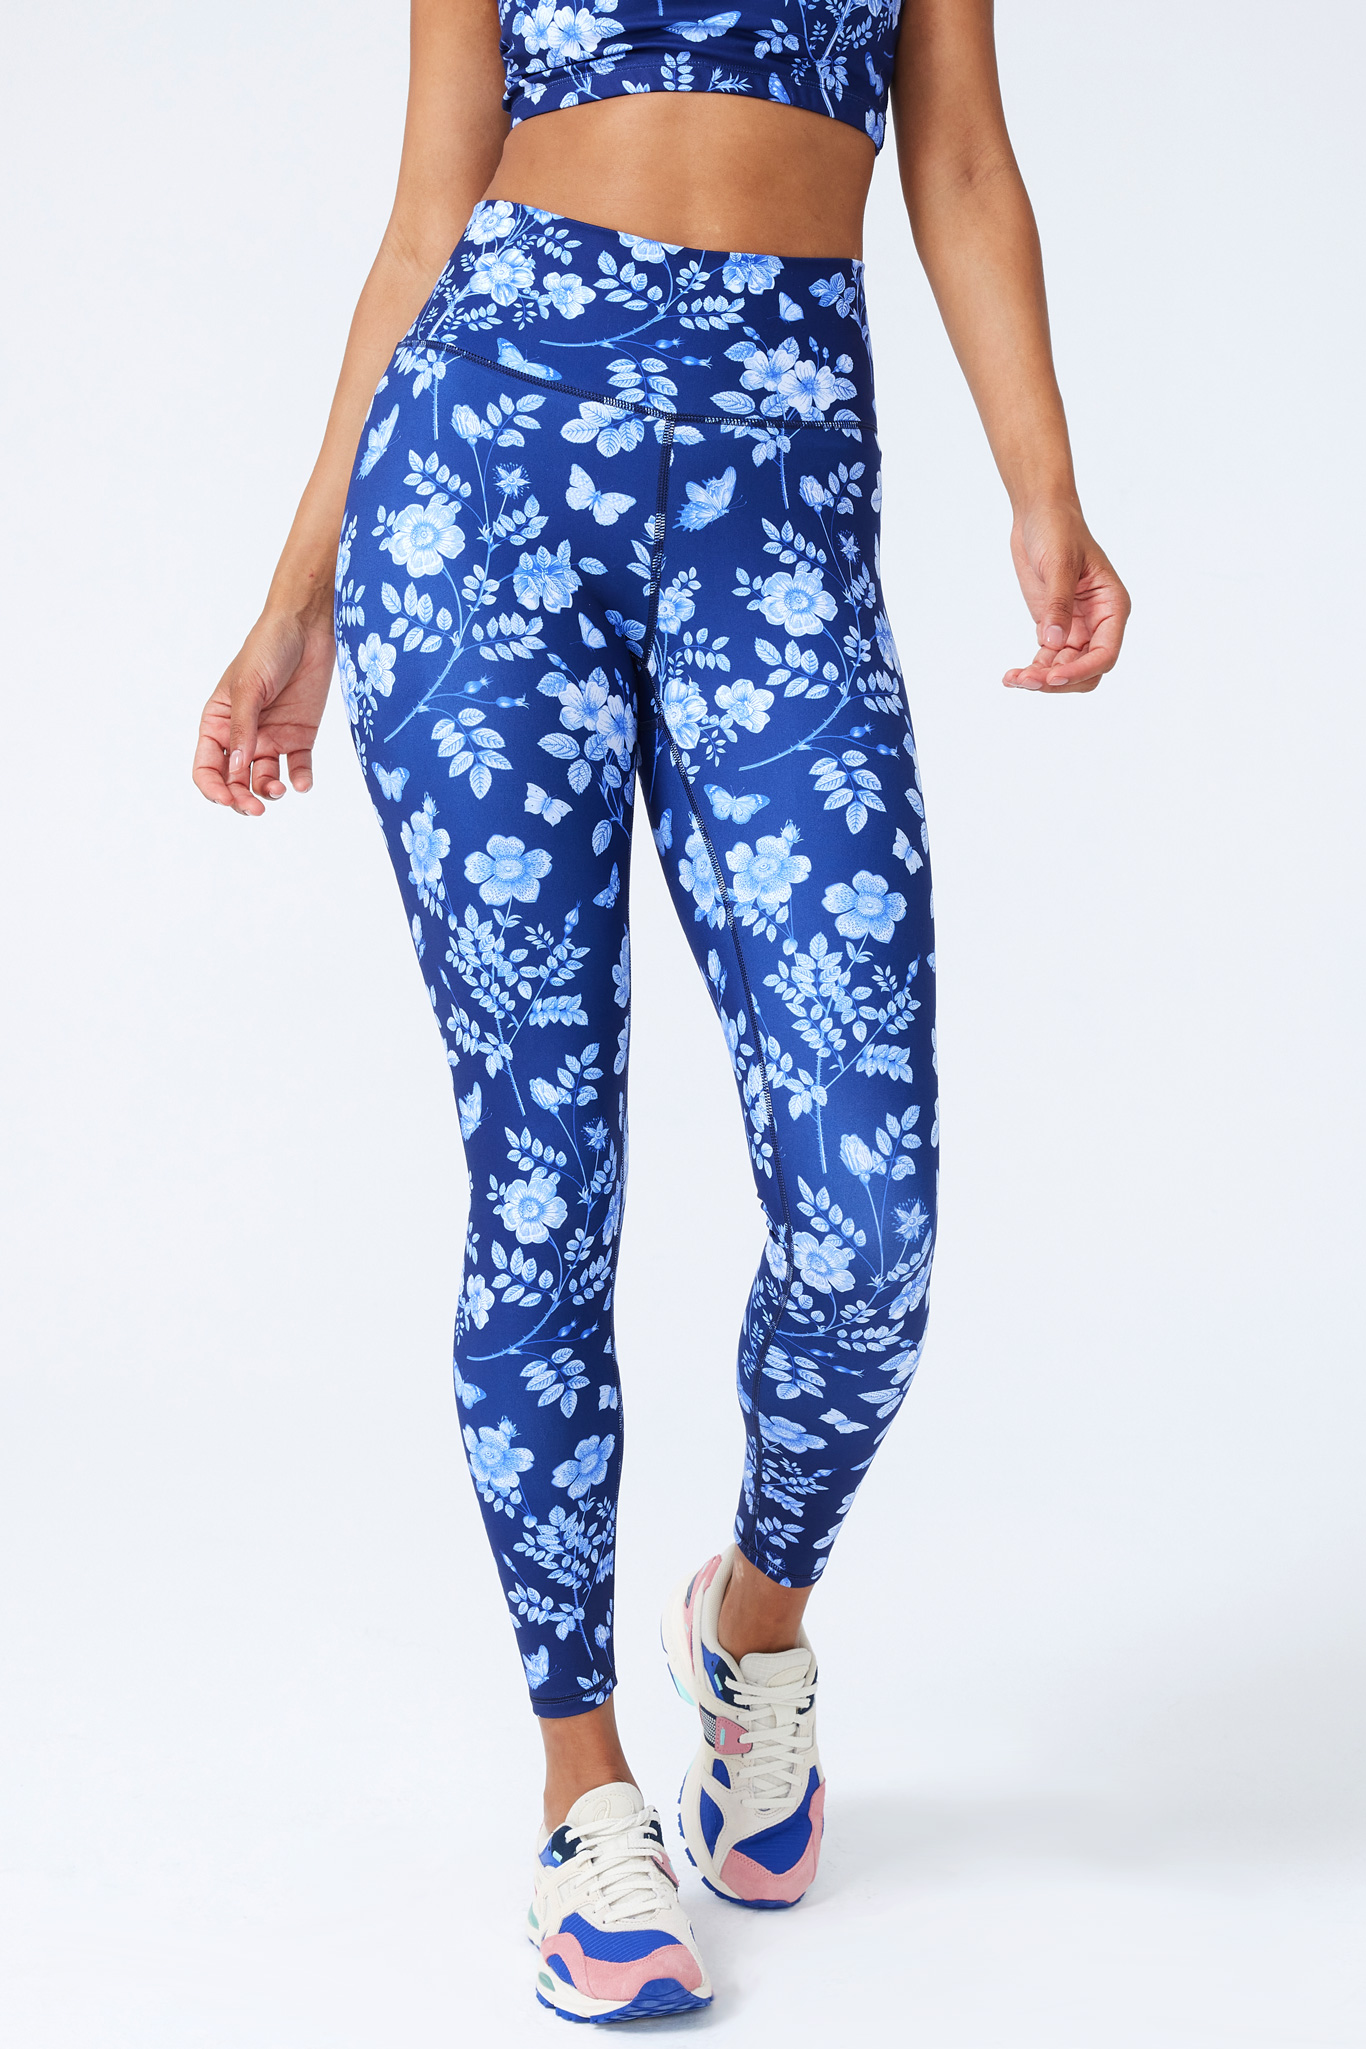 TEREZ Women's Blue Foild Printed Leggings #22257756 NWT